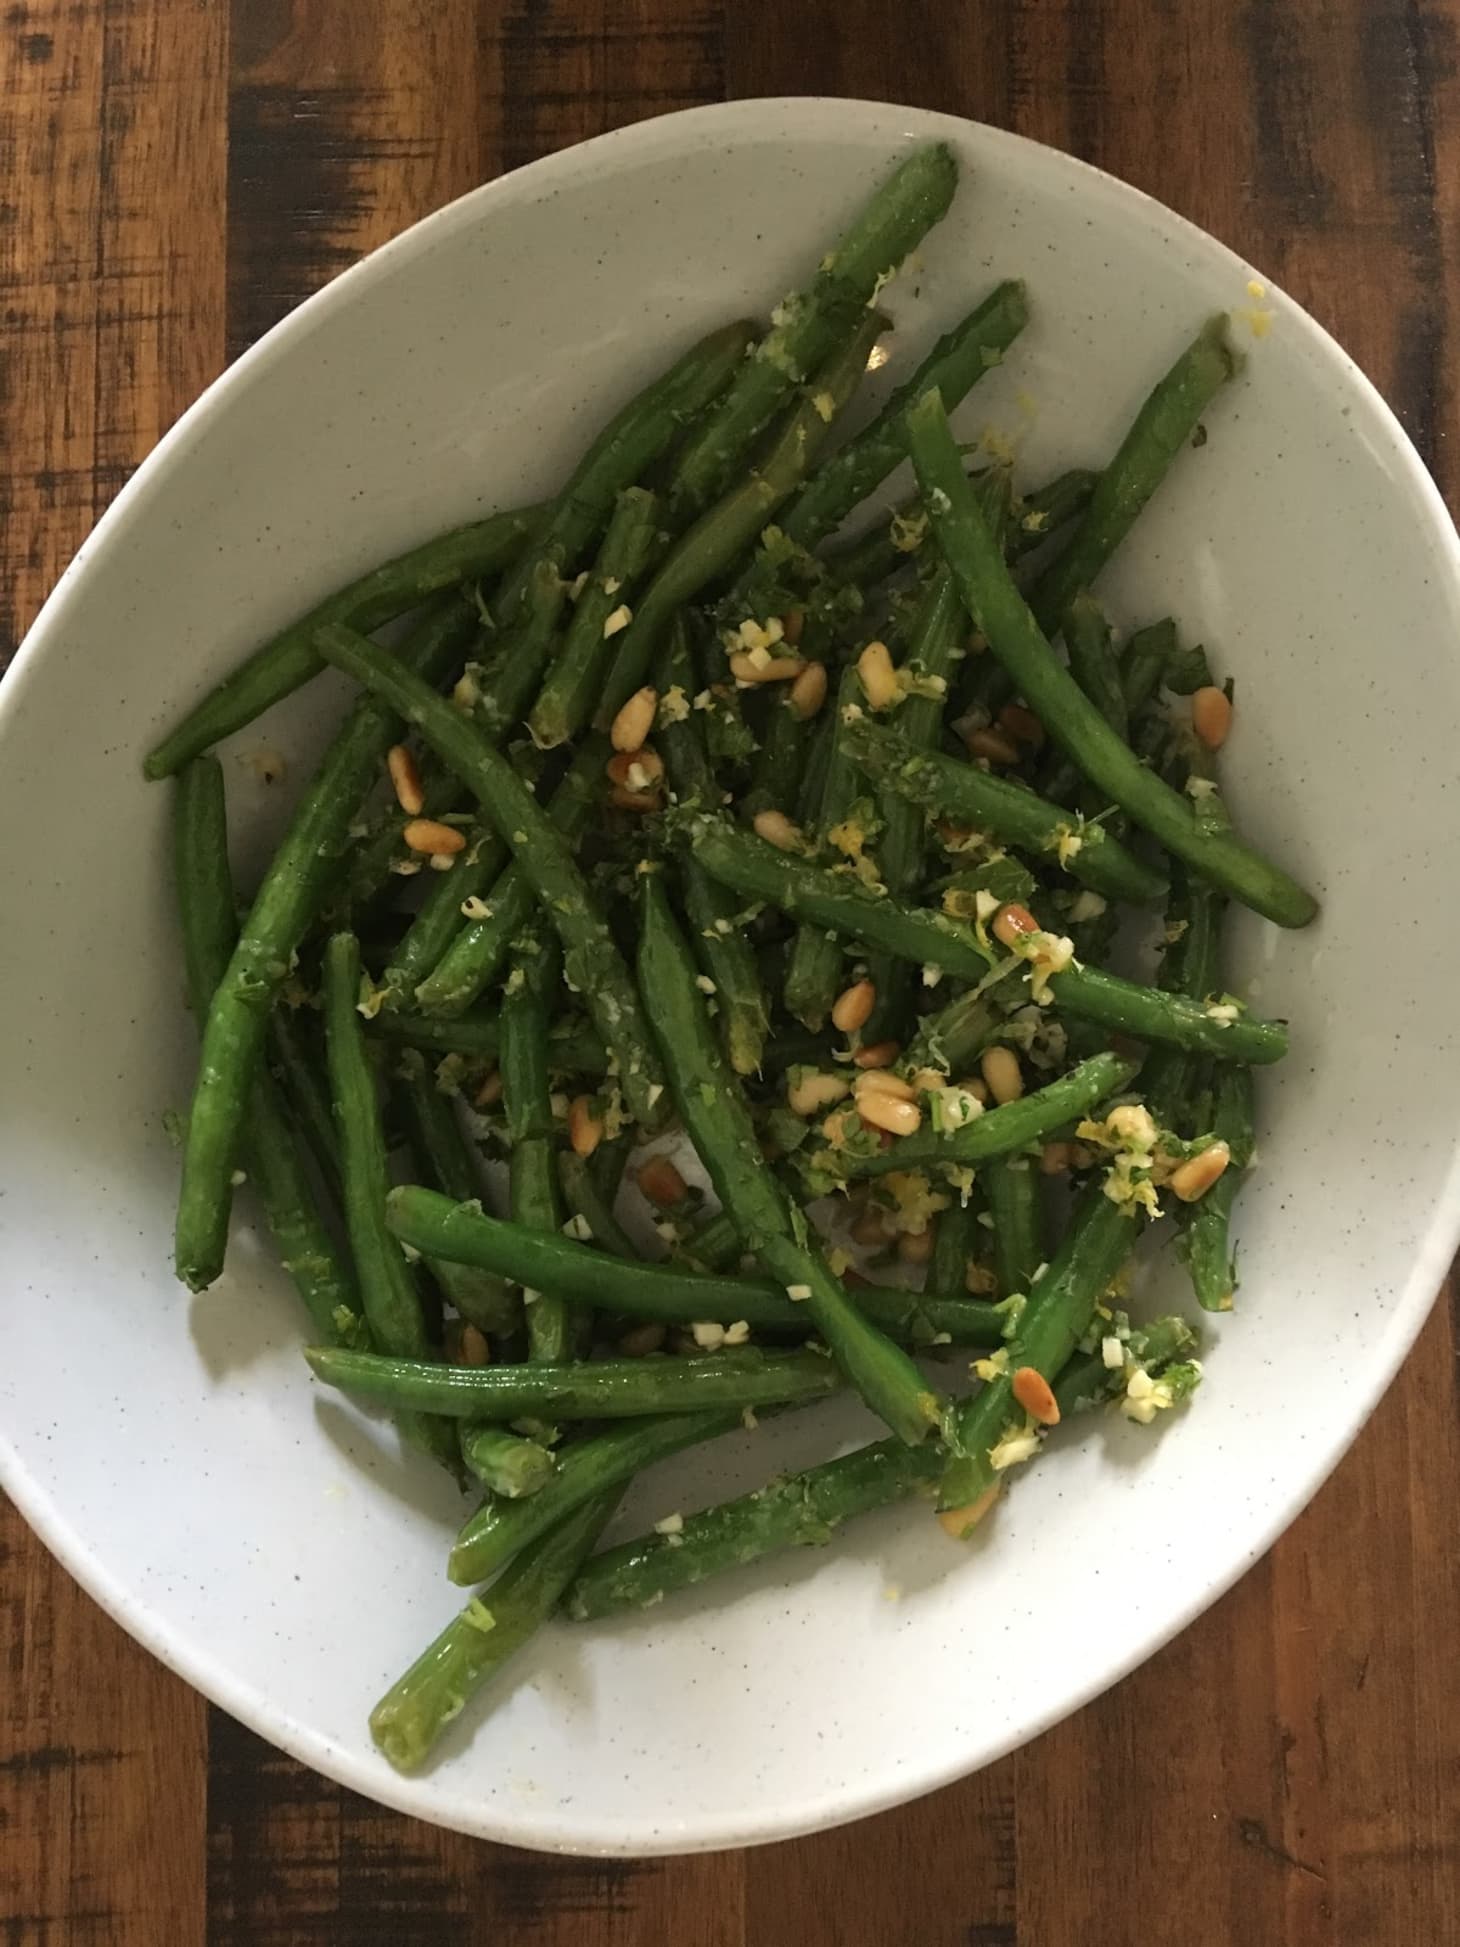 I Tried Ina Garten's Green Beans Gremolata Recipe | Kitchn